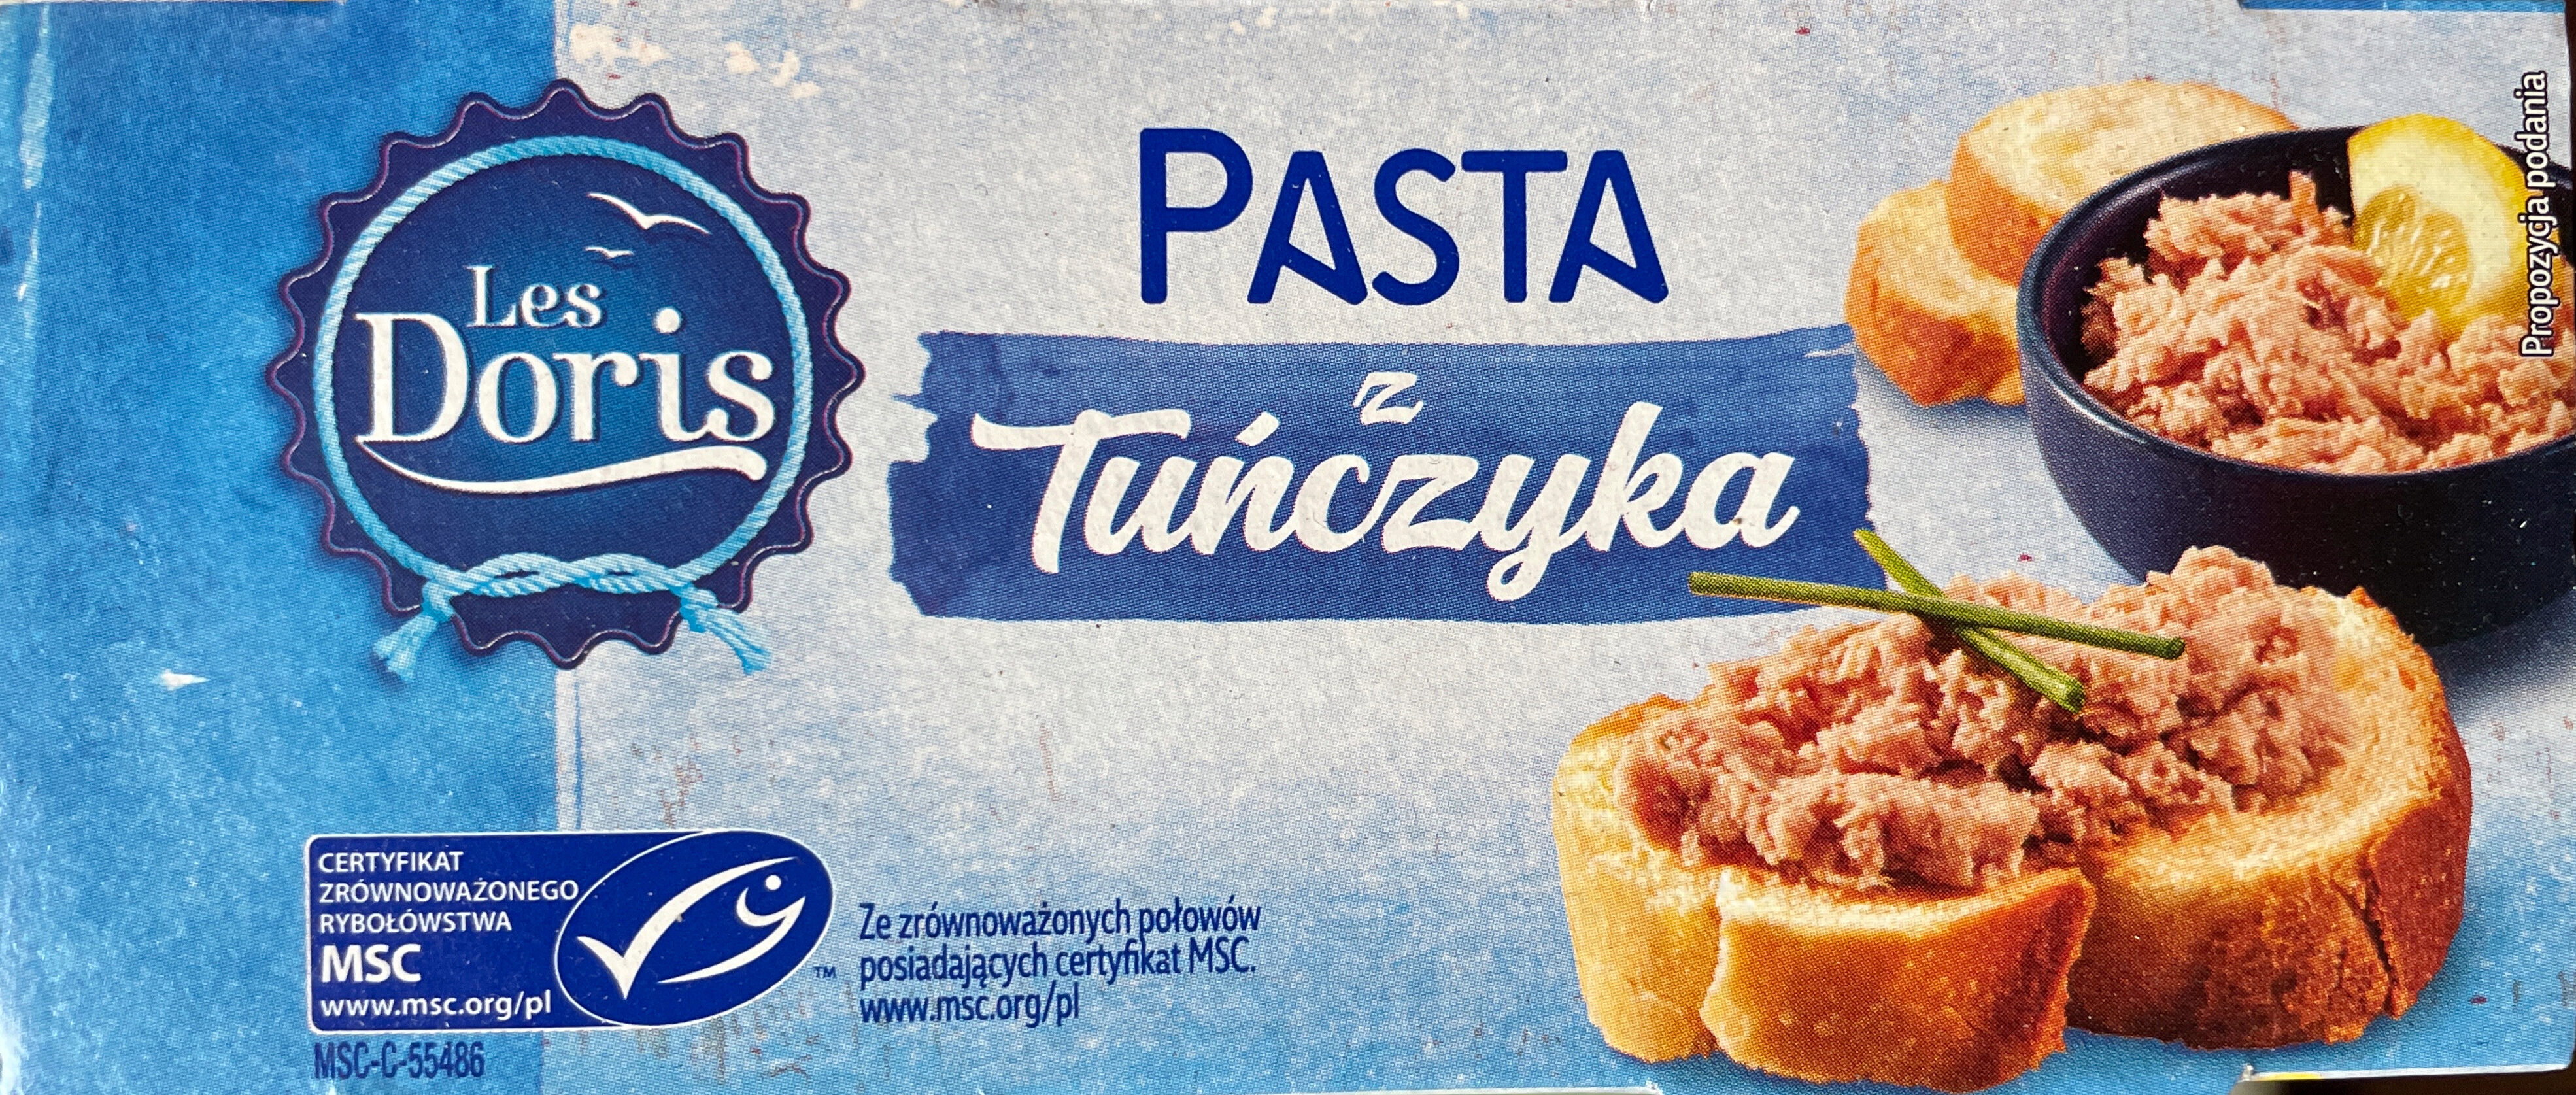 Pasta z tuńczyka - Product - pl